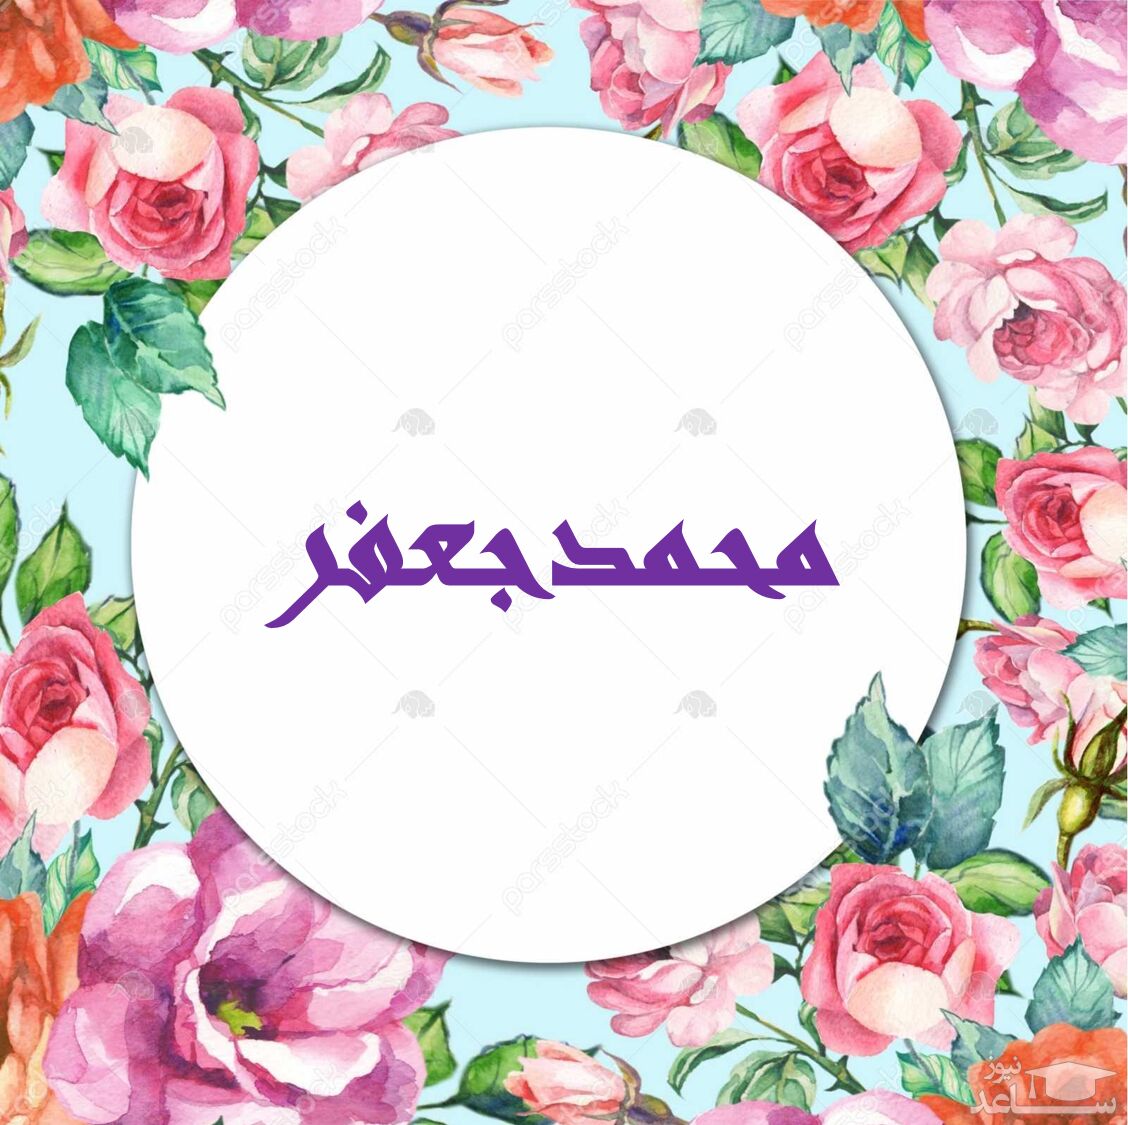 زیباترین پیام های تبریک تولد برای محمدجعفر